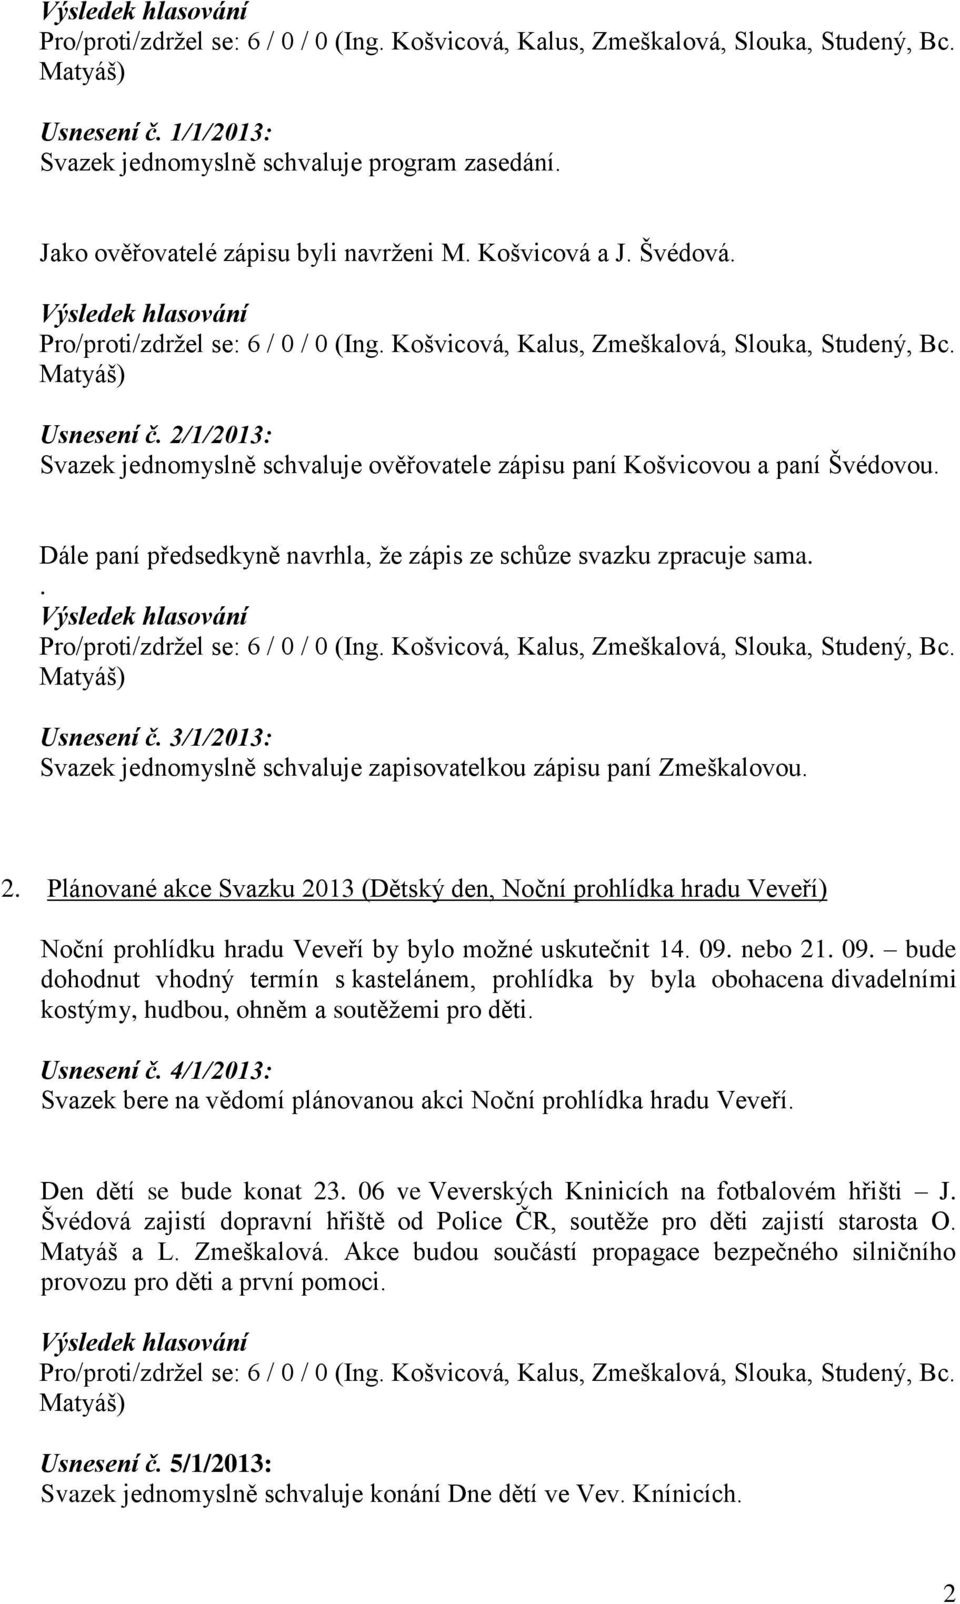 3/1/2013: Svazek jednomyslně schvaluje zapisovatelkou zápisu paní Zmeškalovou. 2.